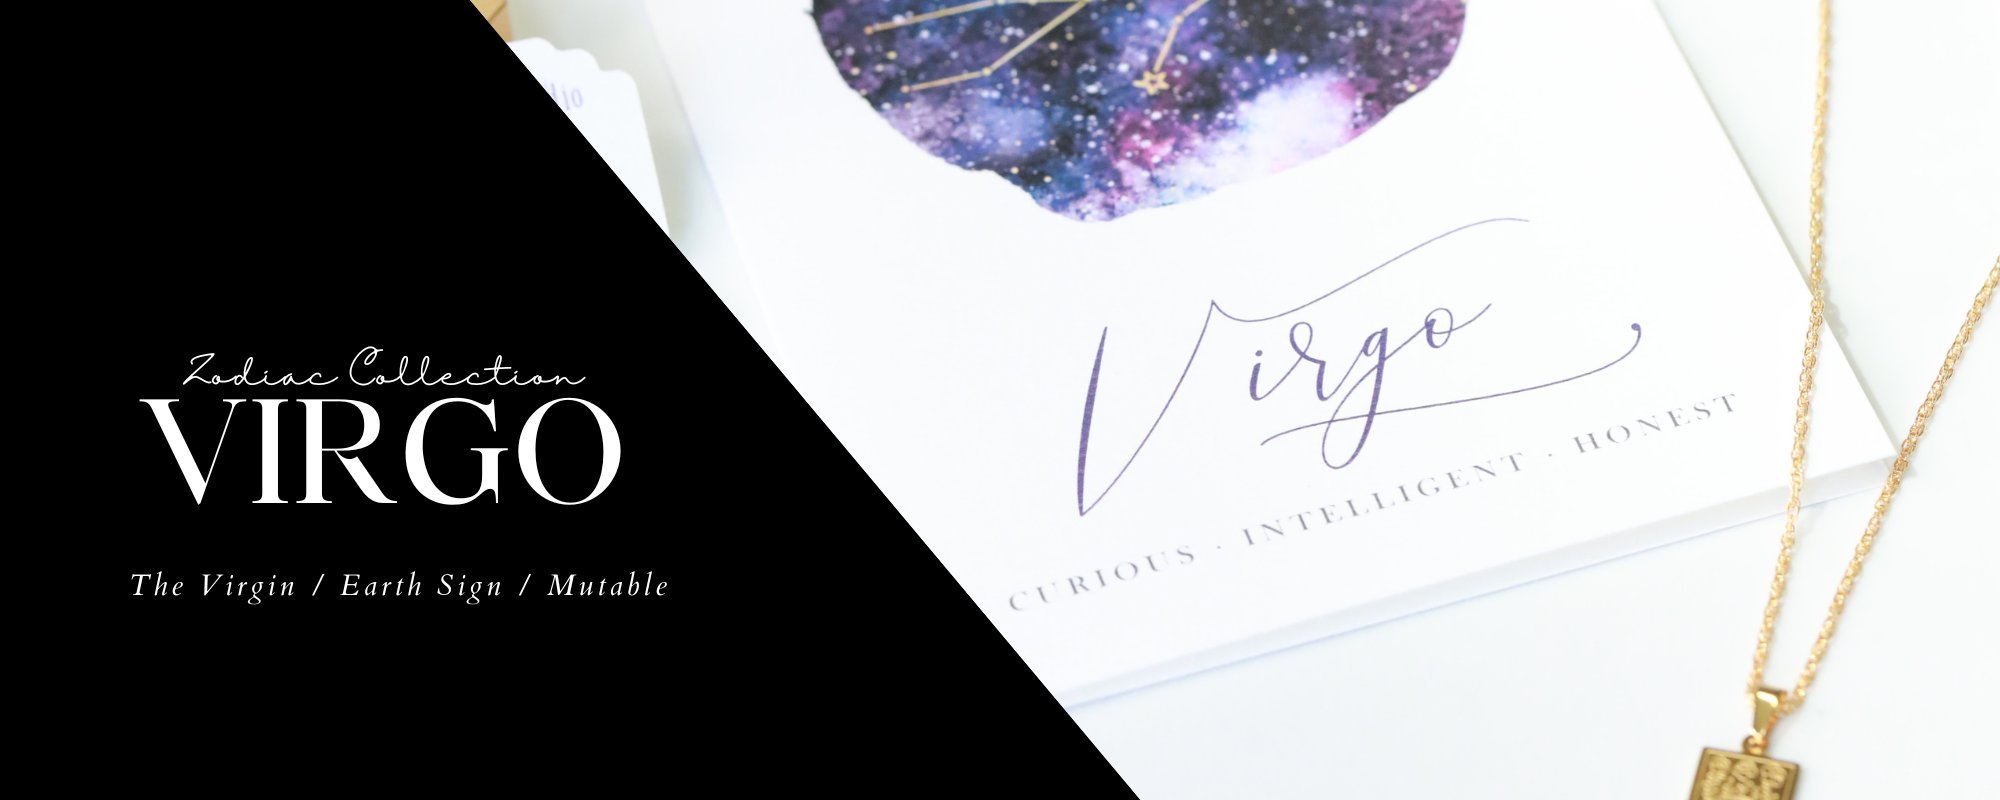 virgo zodiac sign collection image header